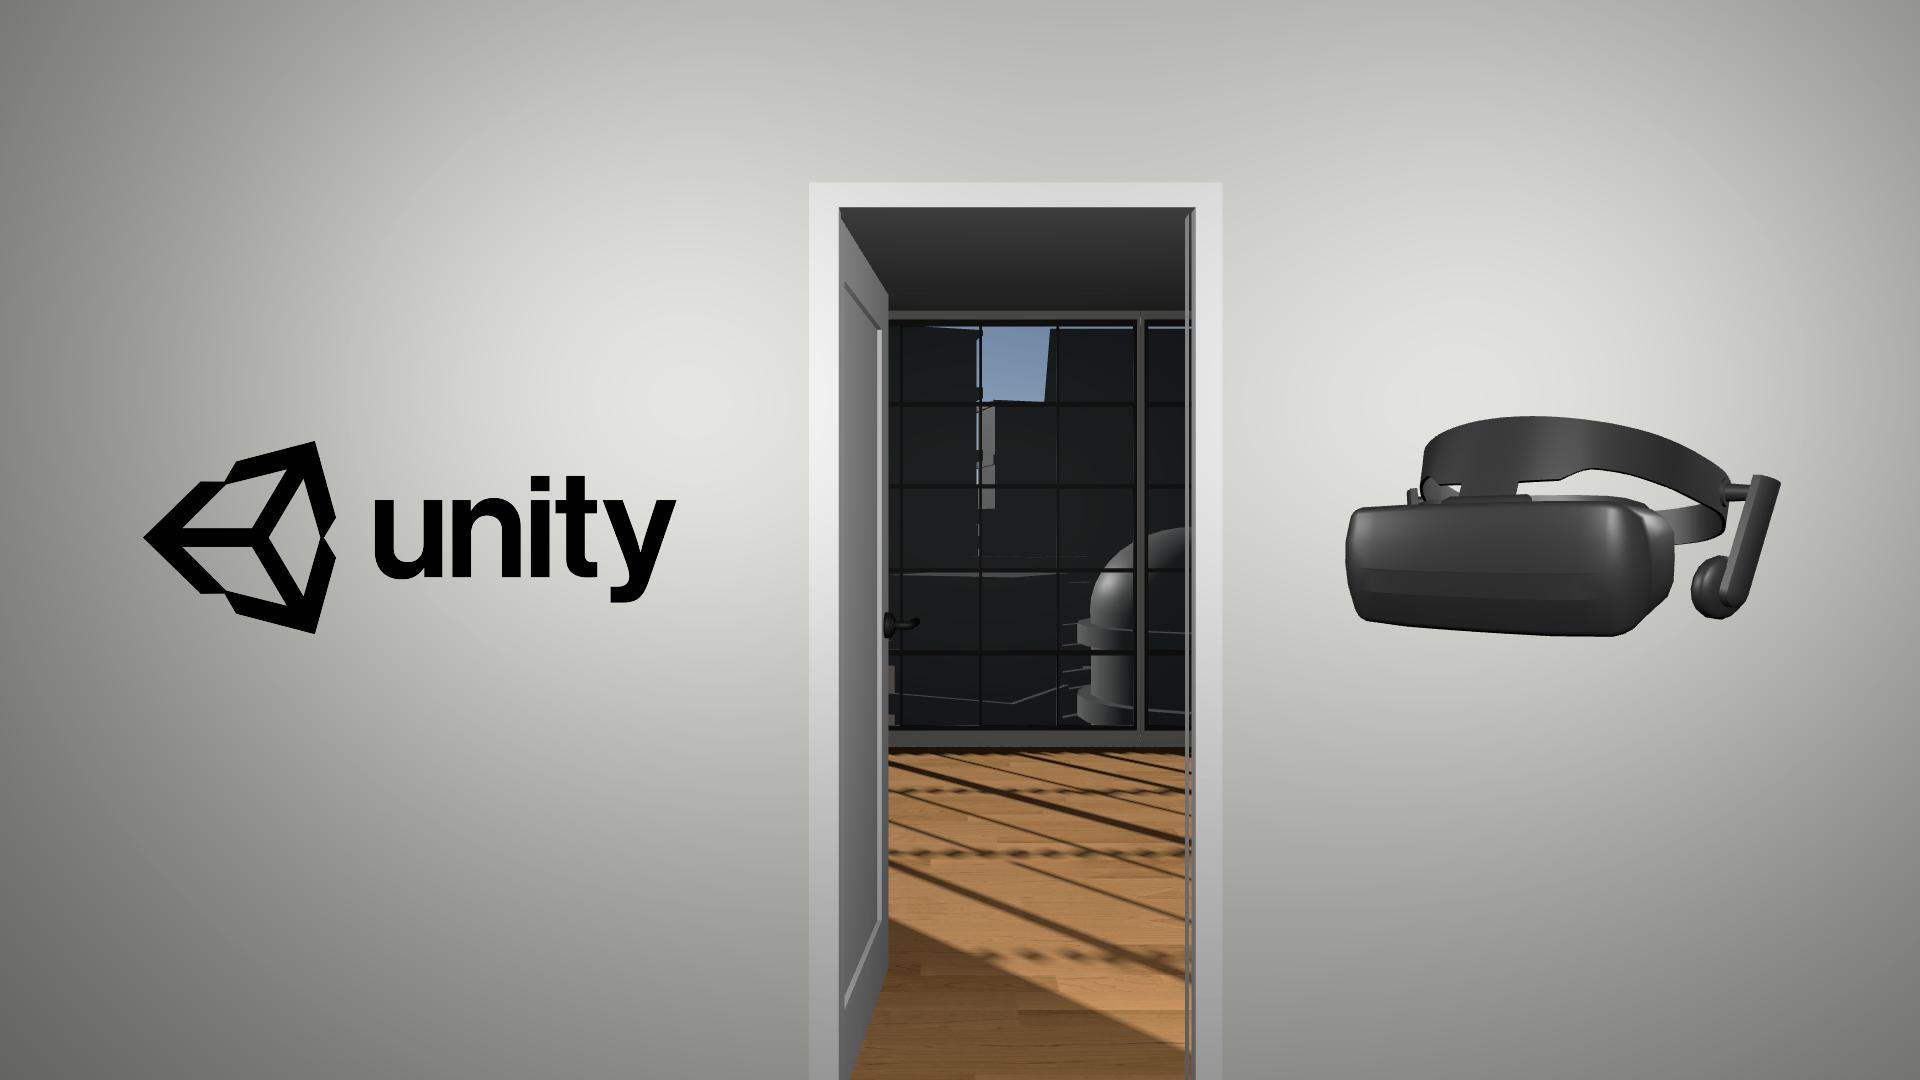 Lejlighedsvis Trafikprop I første omgang Create with VR - Unity Learn